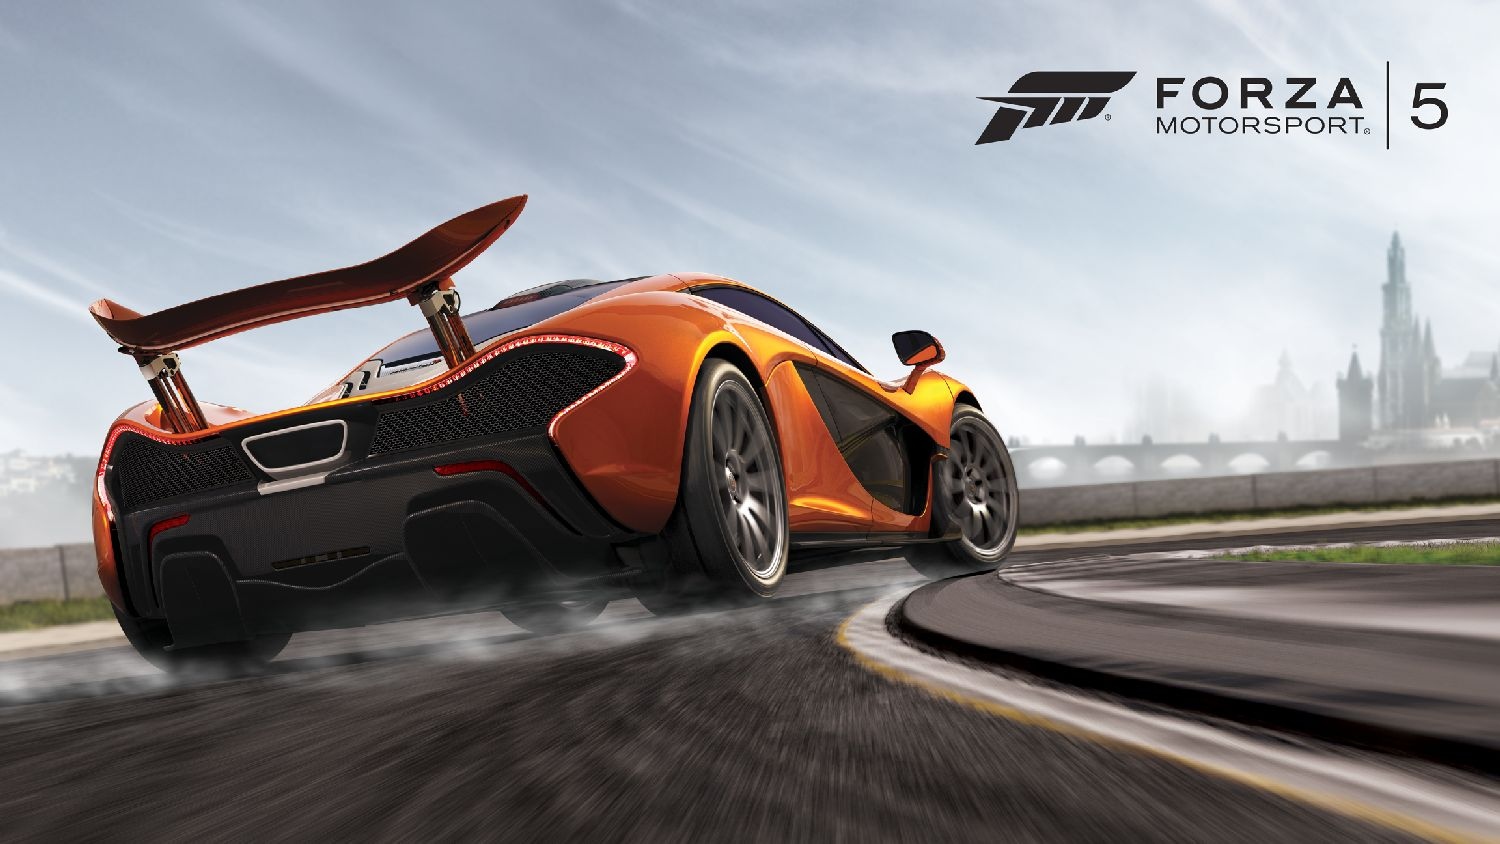 Foto (Reprodução): Forza 5 exclusivo do Xbox One.